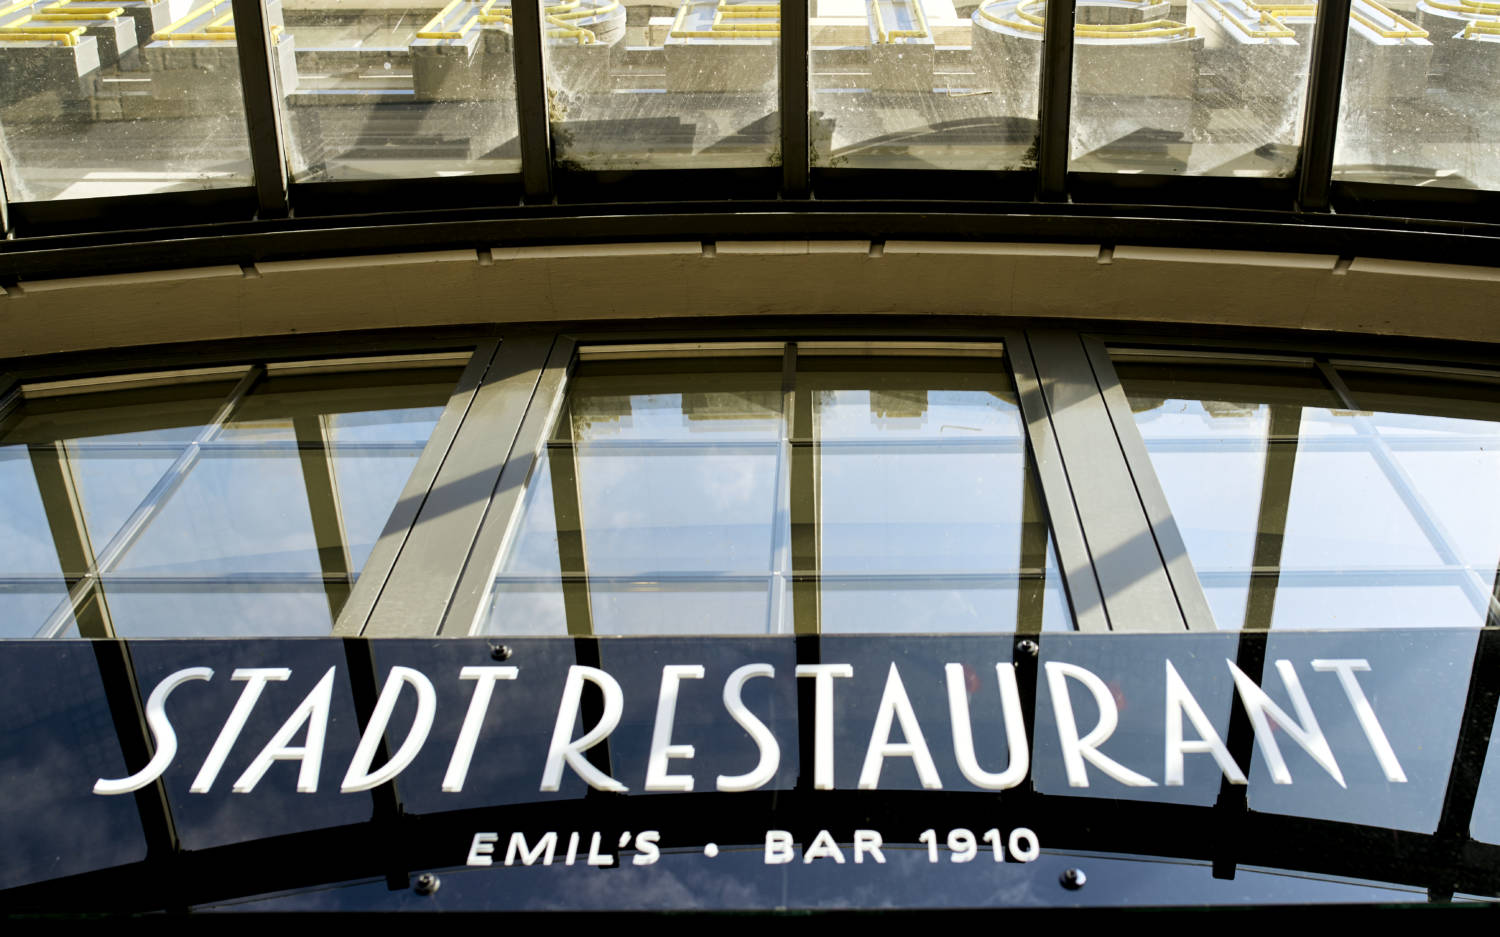 Das Stadt Restaurant in St. Georg – Emil's Bar 1910 / ©Marc Sill